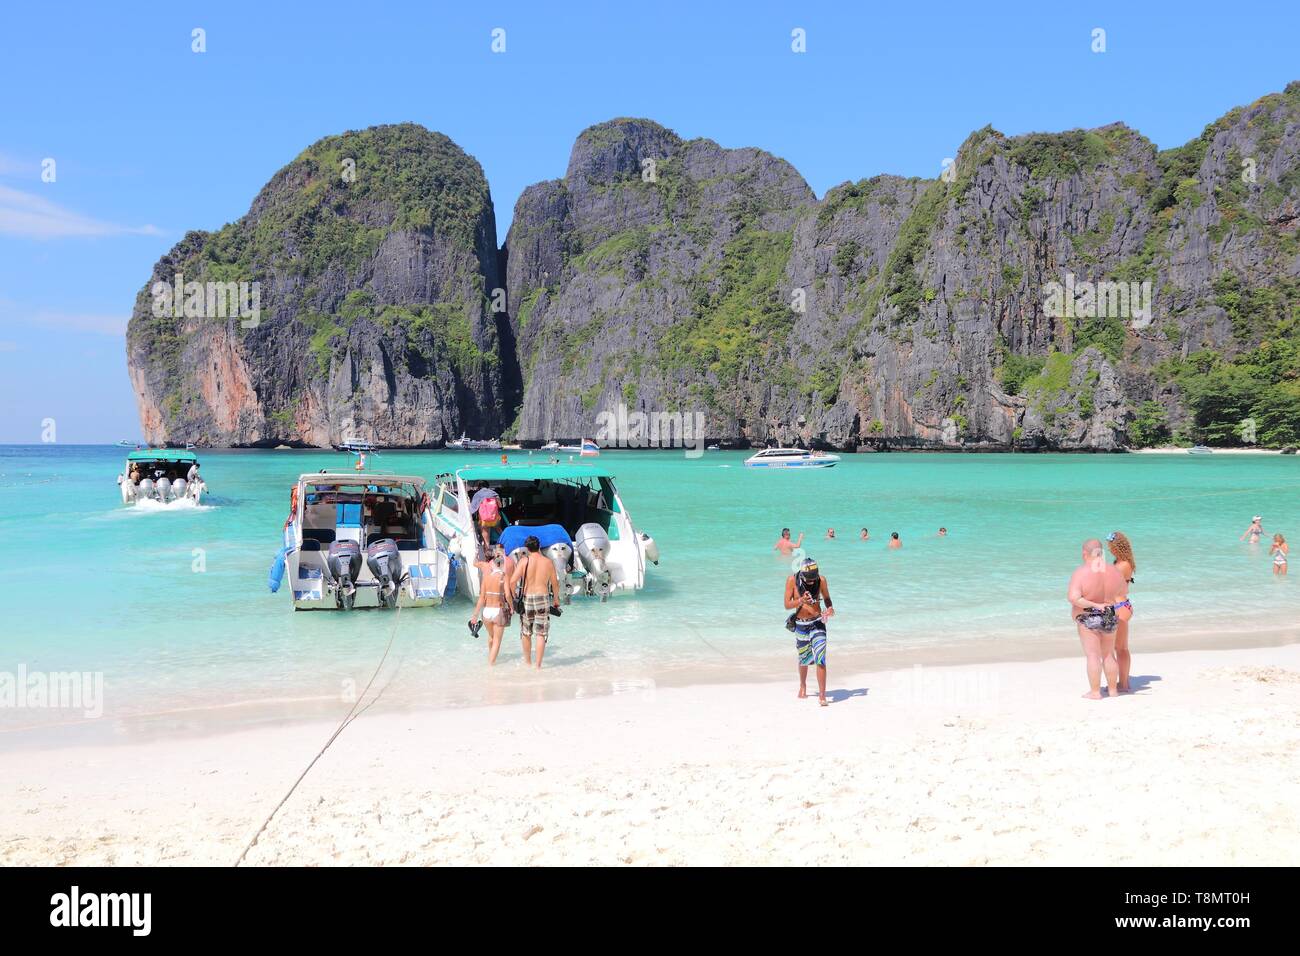 KO PHI PHI, THAÏLANDE - 20 décembre 2013 : visite de l'île de Koh Phi Phi en Thaïlande. 26,7 millions de personnes ont visité la Thaïlande en 2013. Banque D'Images